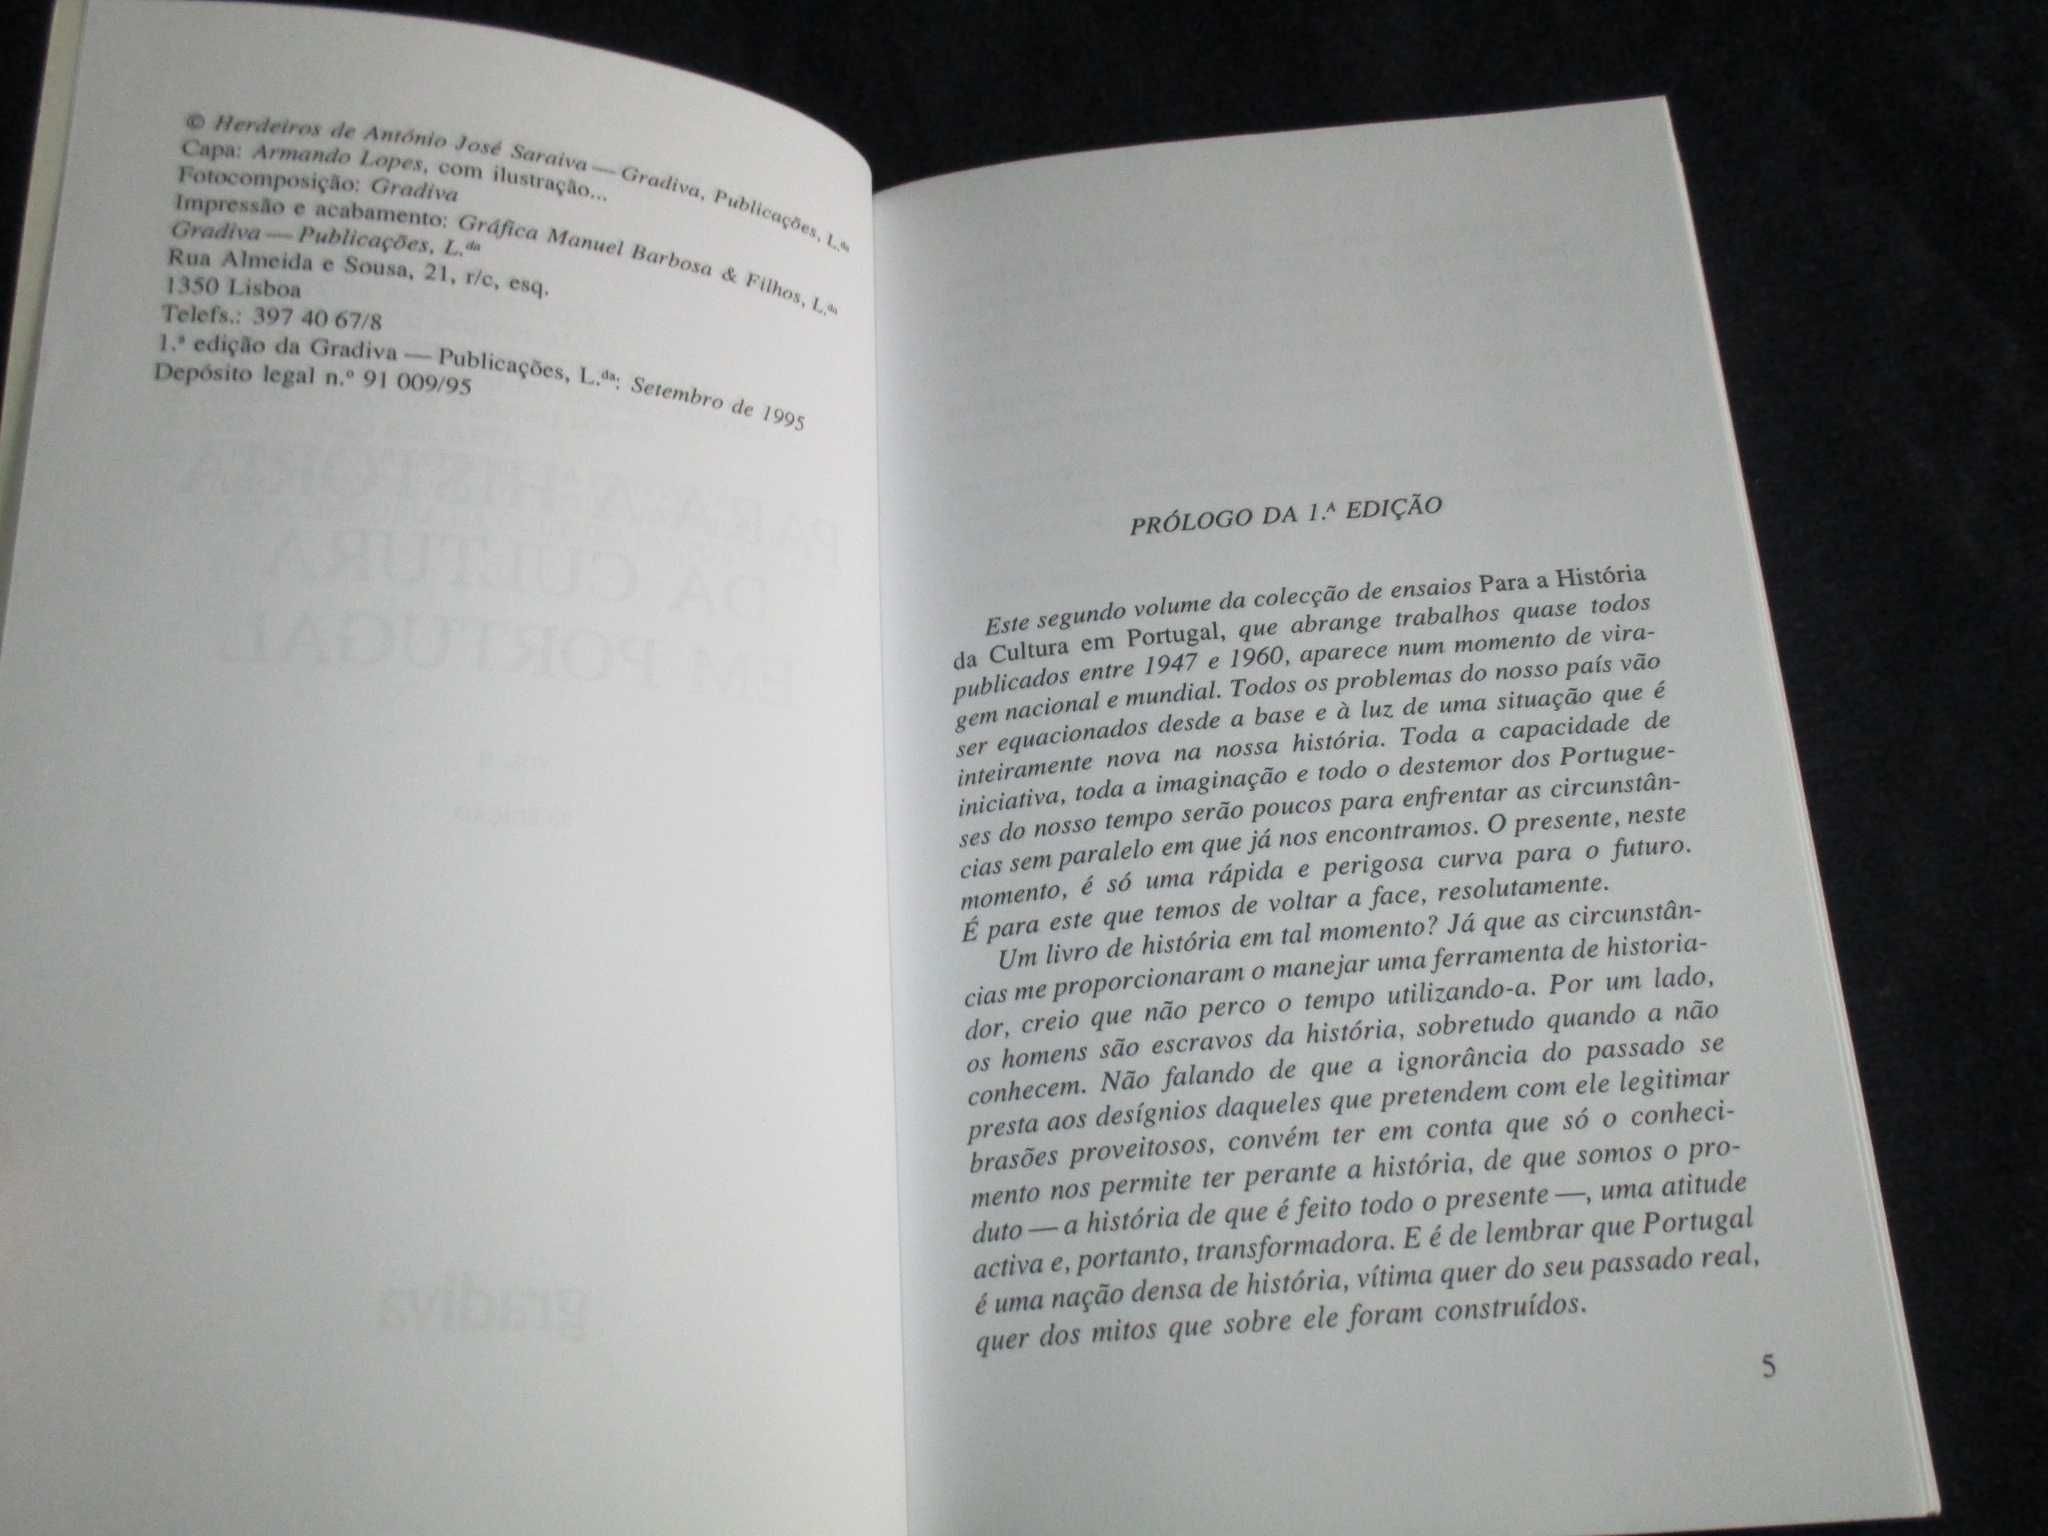 Livro Para a História da Cultura em Portugal II António José Saraiva